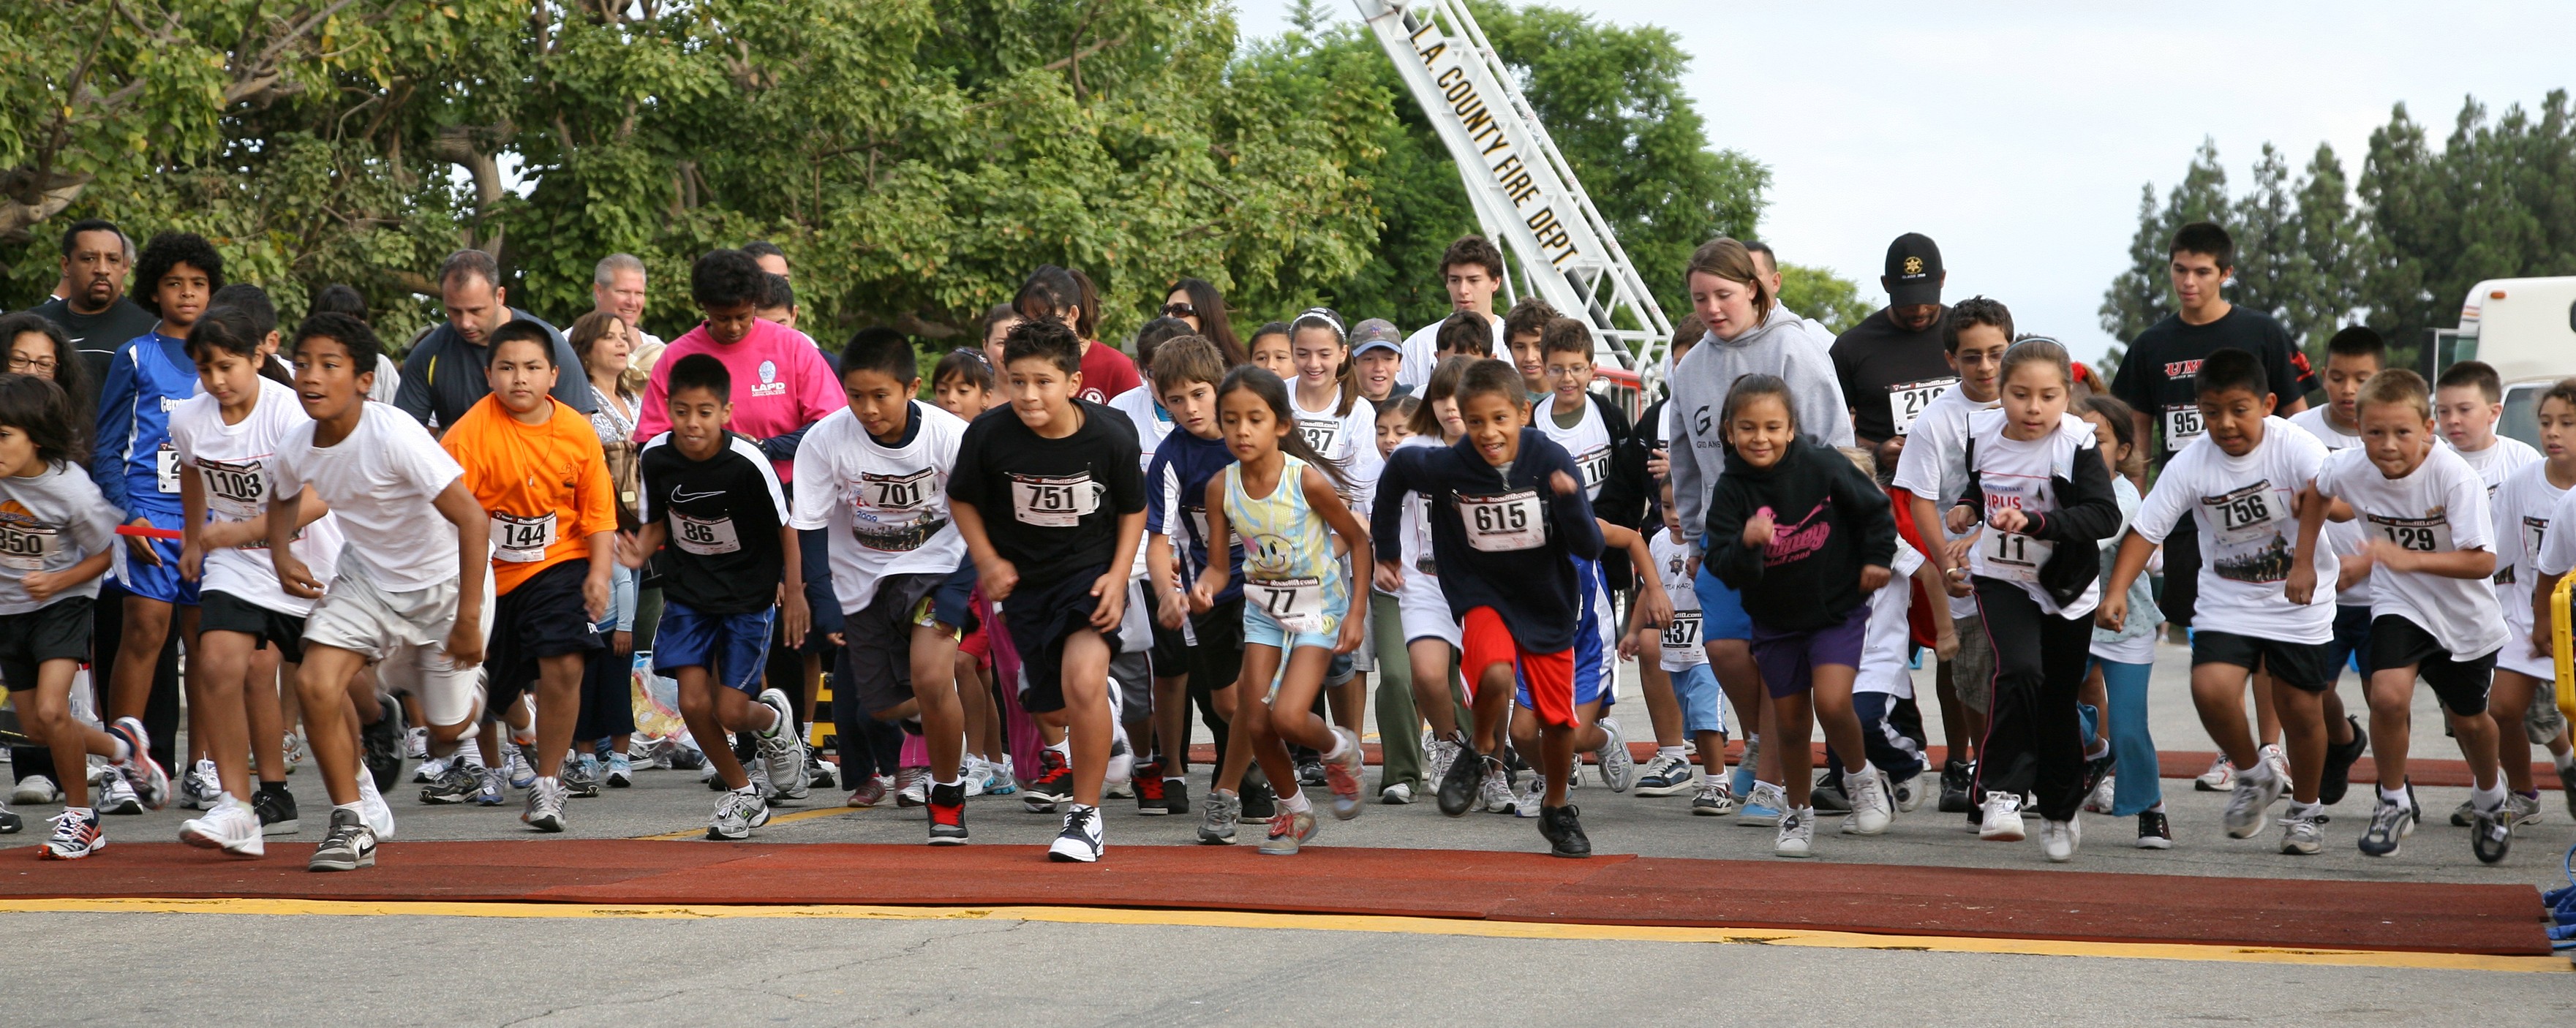 Kids 1-mile fun run